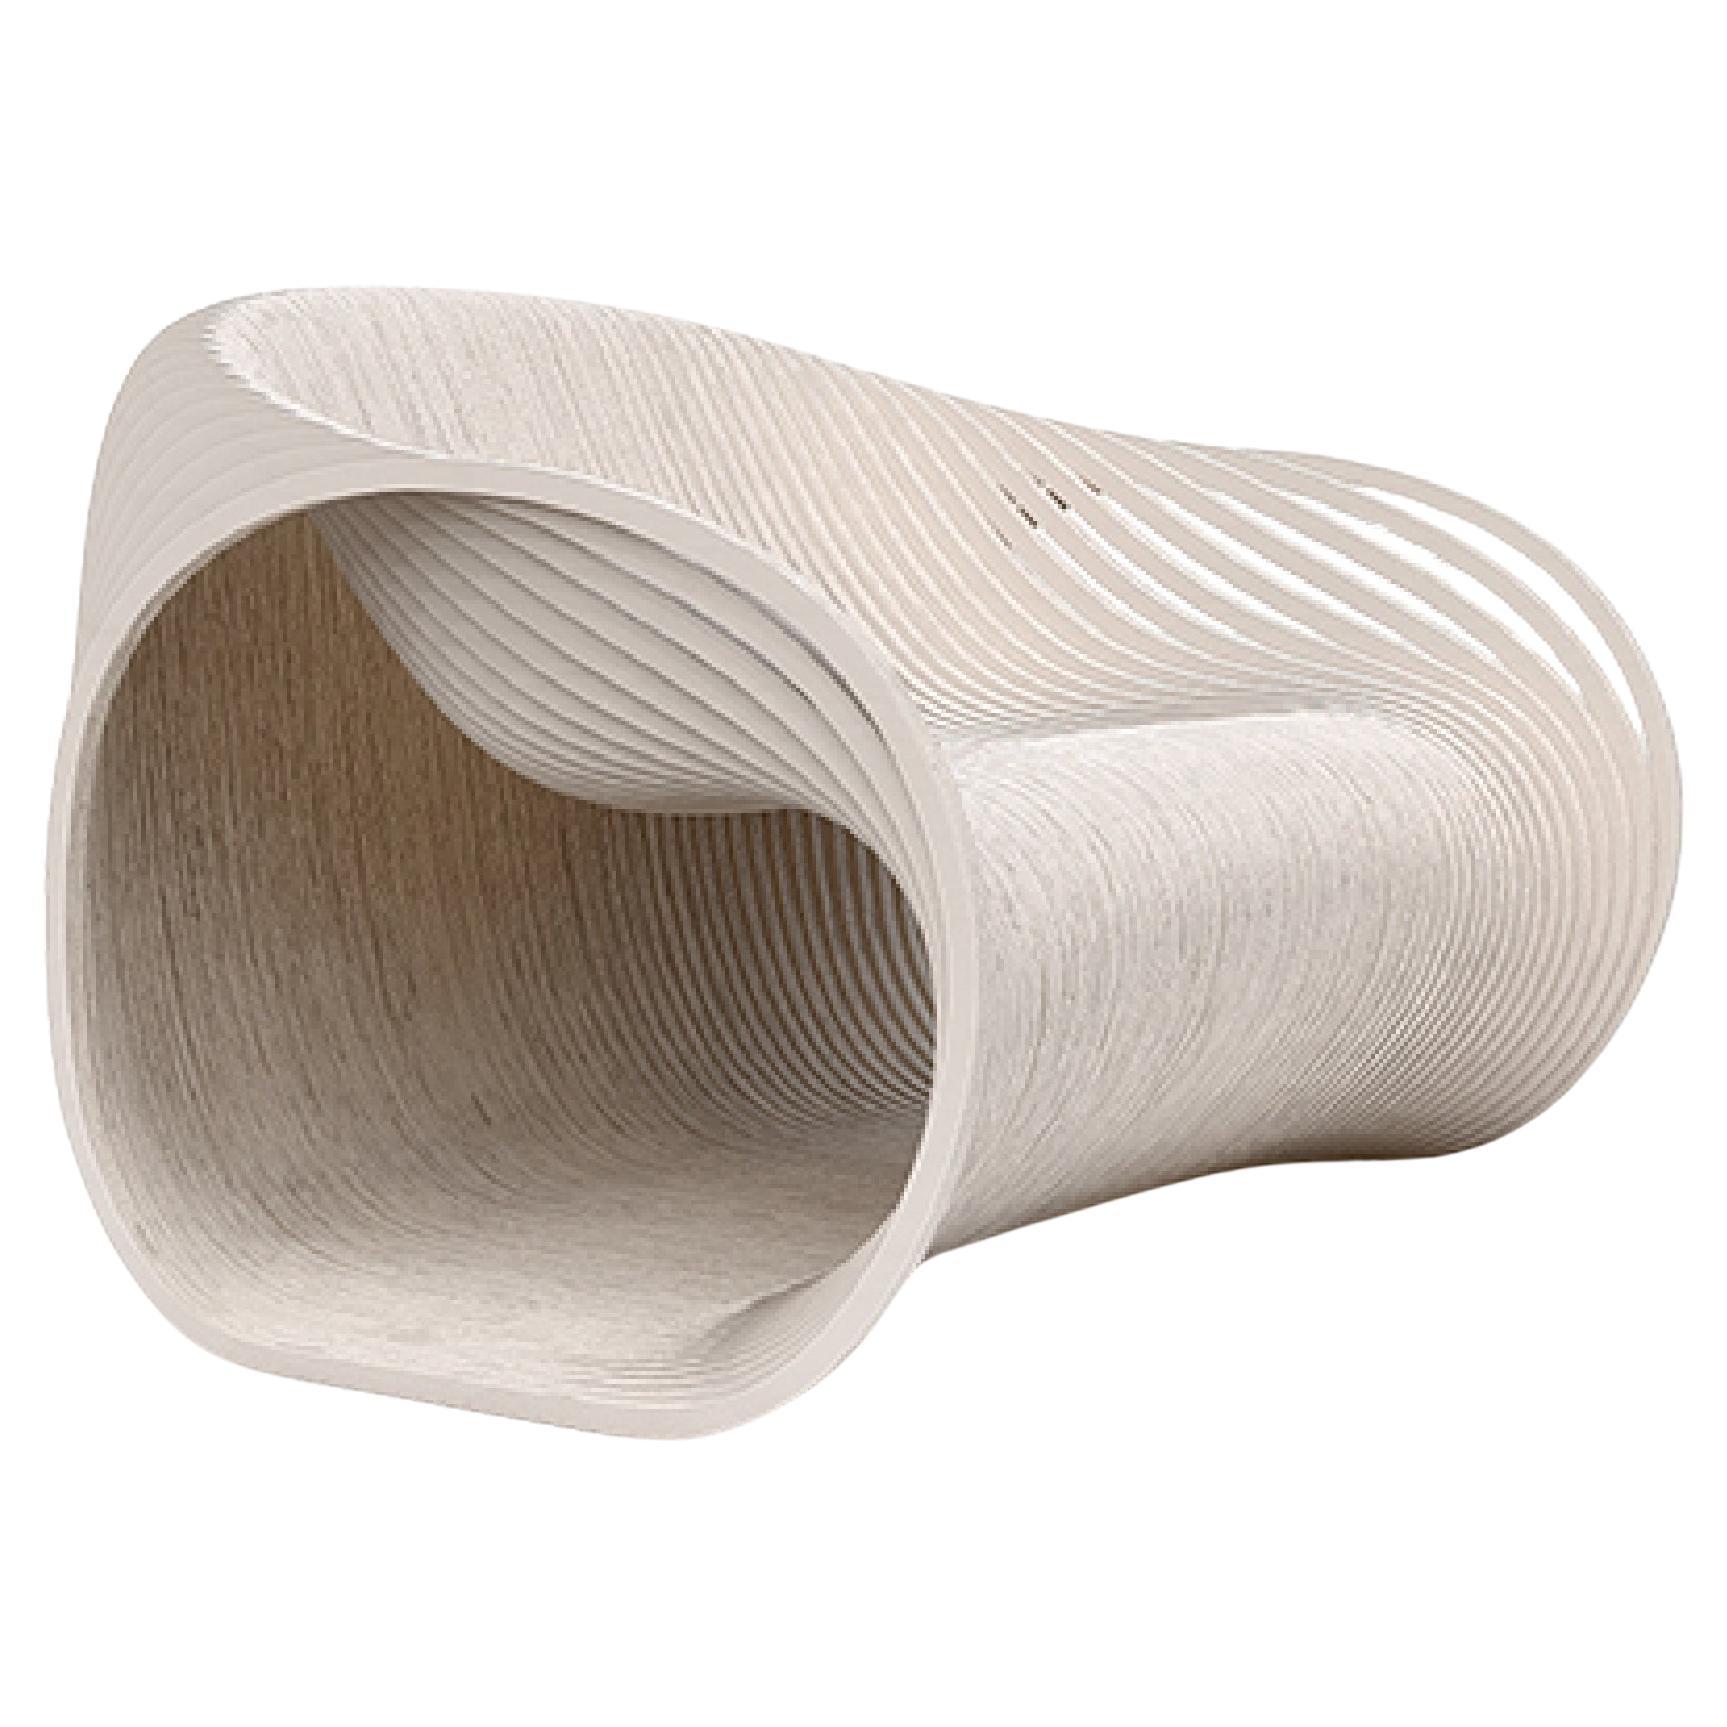 Soave Lounge von Piegatto, ein skulpturaler Stuhl